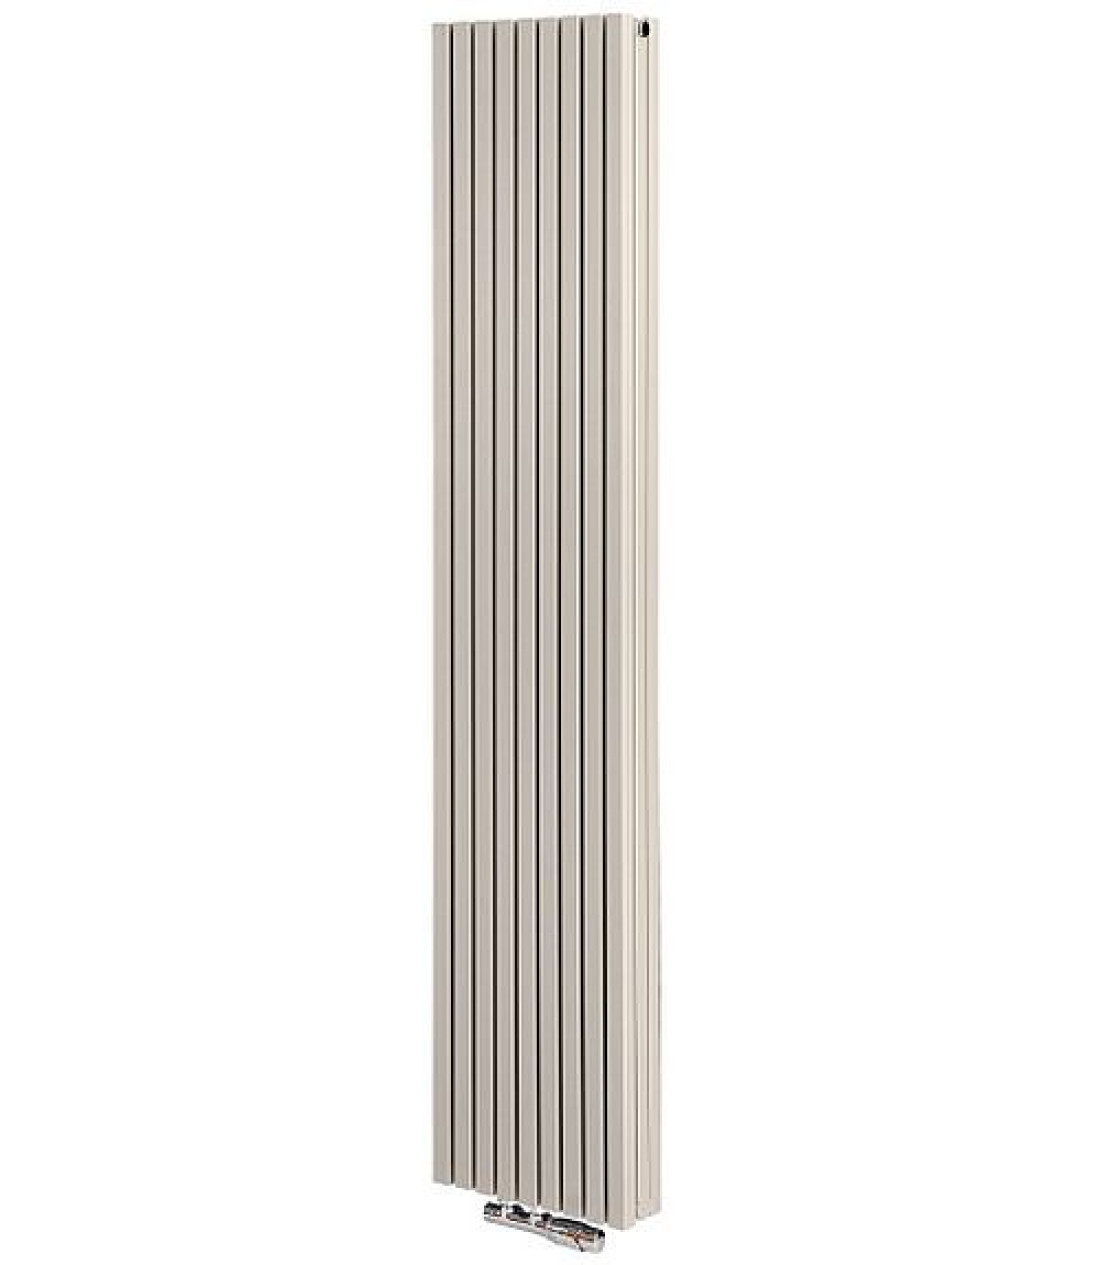 Grzejnik Torget Bis - funkcjonalny minimalizm, praktyczny design